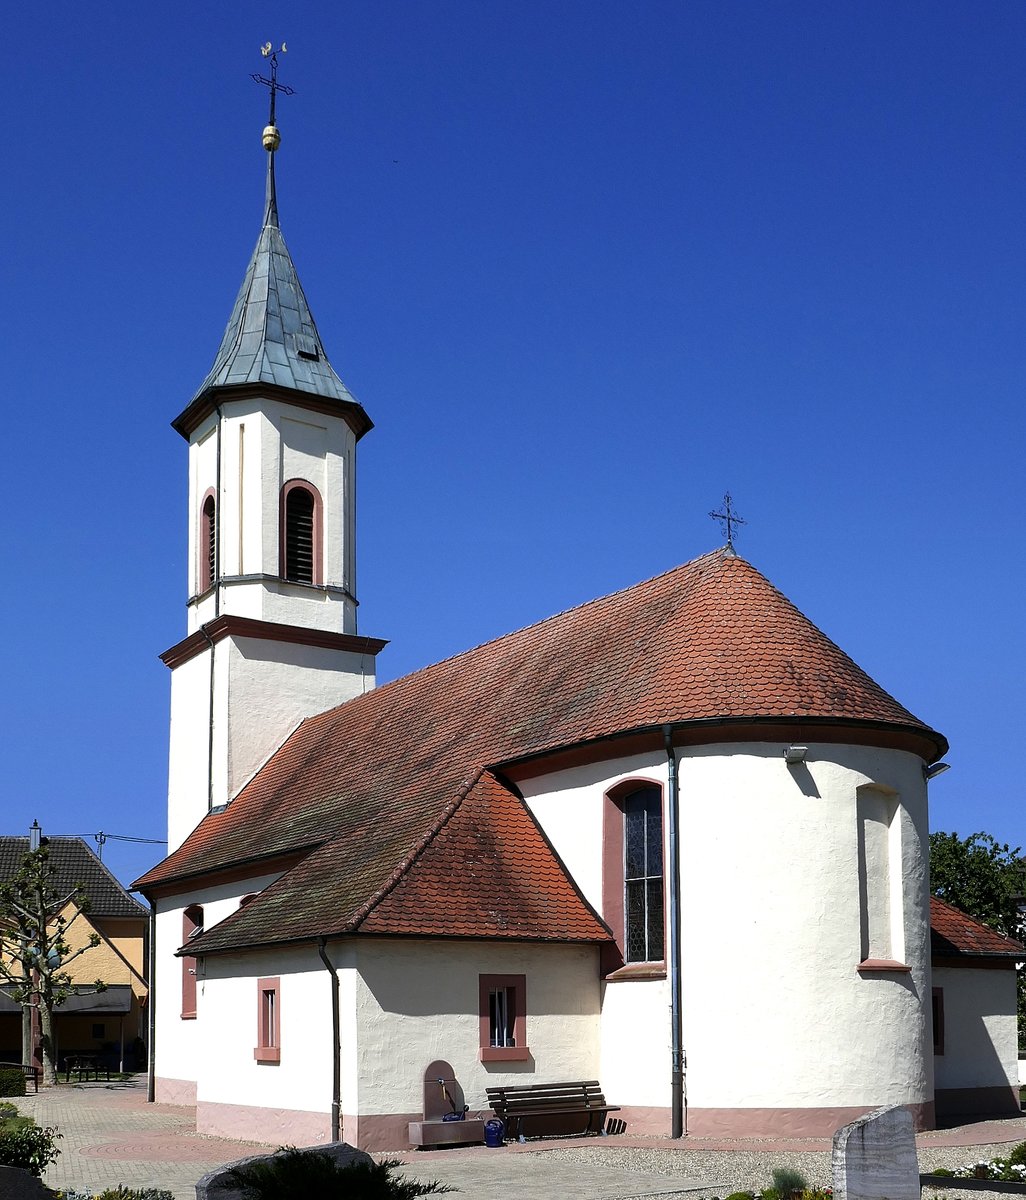 Mllen, OT von Neuried in der Ortenau, die katholische Pfarrkirche St.Ulrich, 1741 barock erweitert und erneuert, Mai 2020